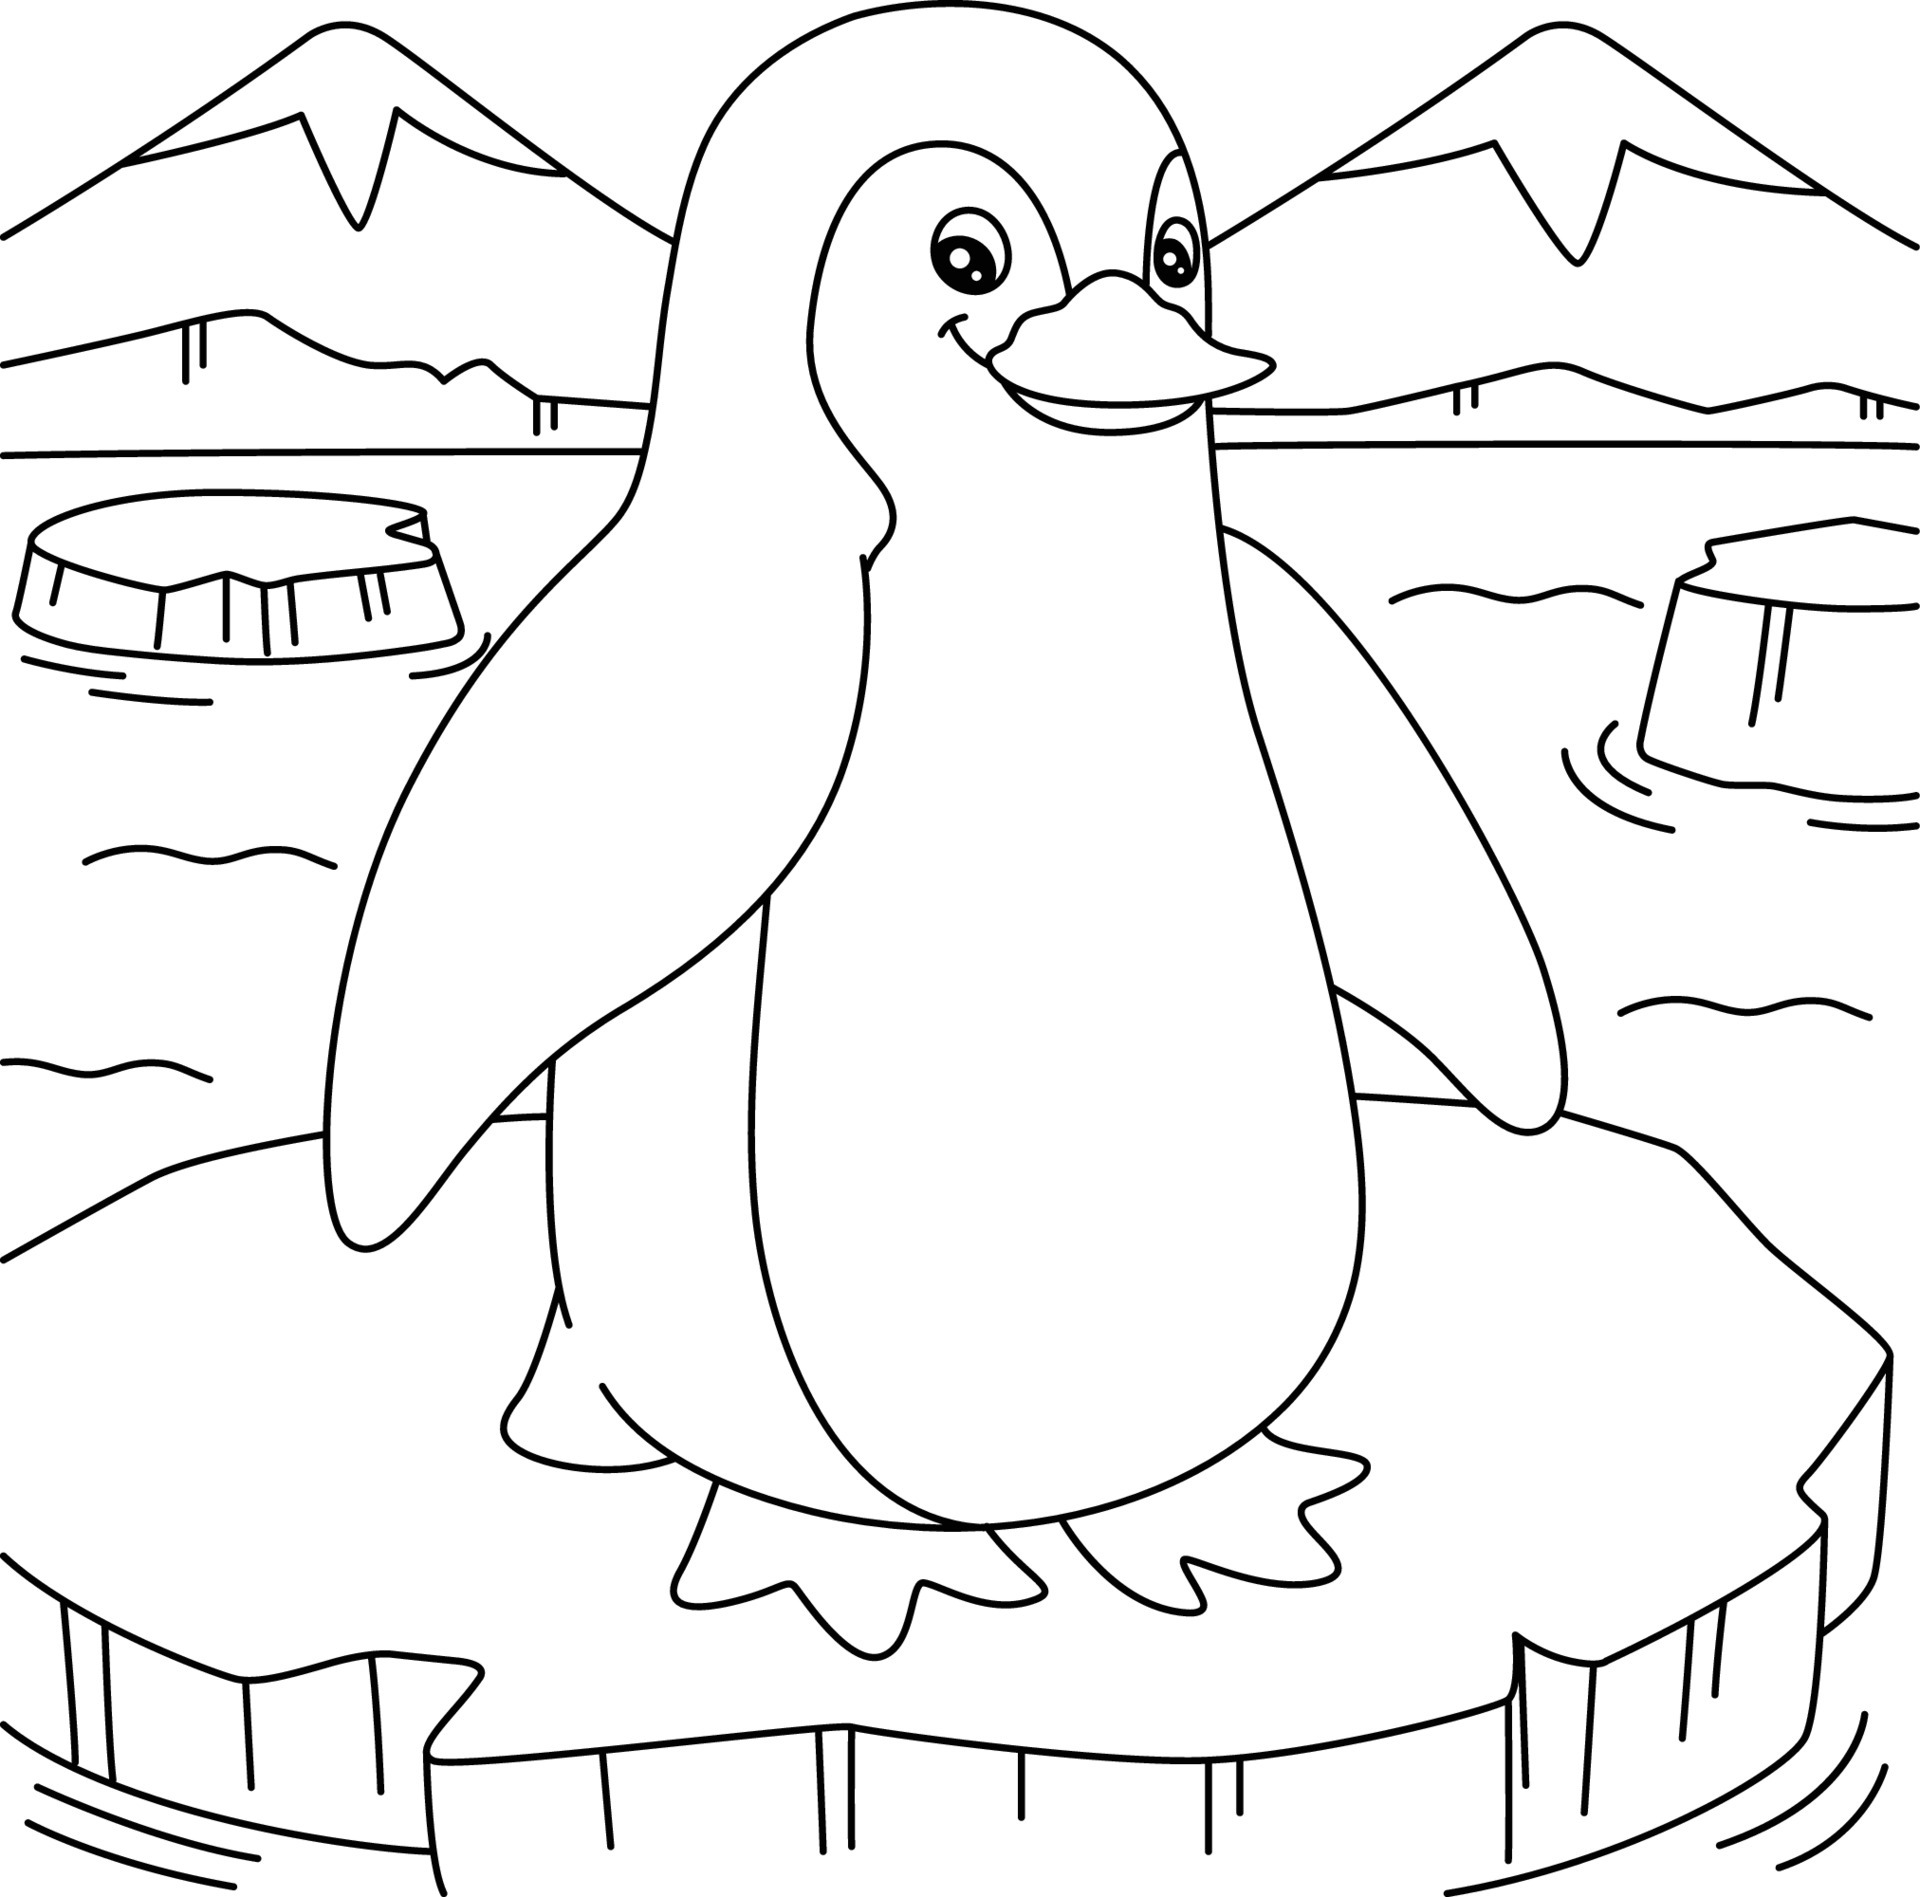 Penguin on an ice floe for kids #2